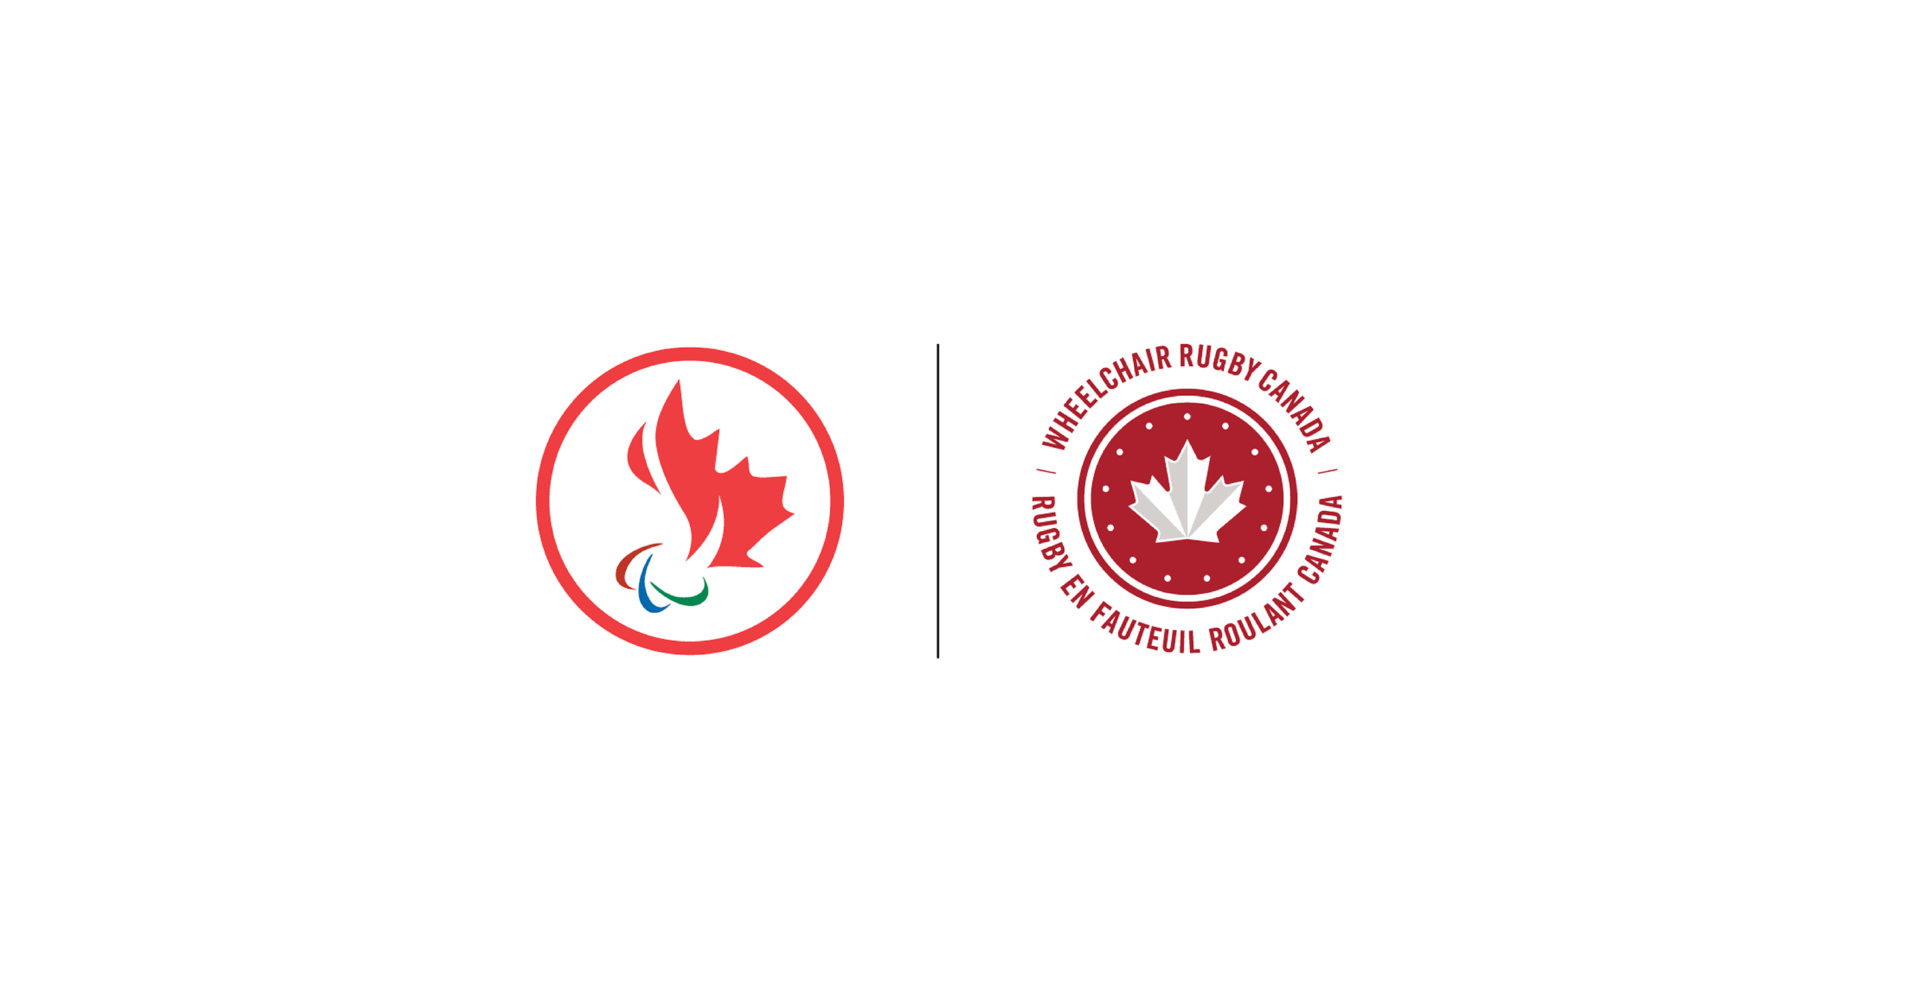 Les membres de l’équipe canadienne de rugby en fauteuil roulant sont nommés pour les Jeux parapanaméricains de Lima de 2019